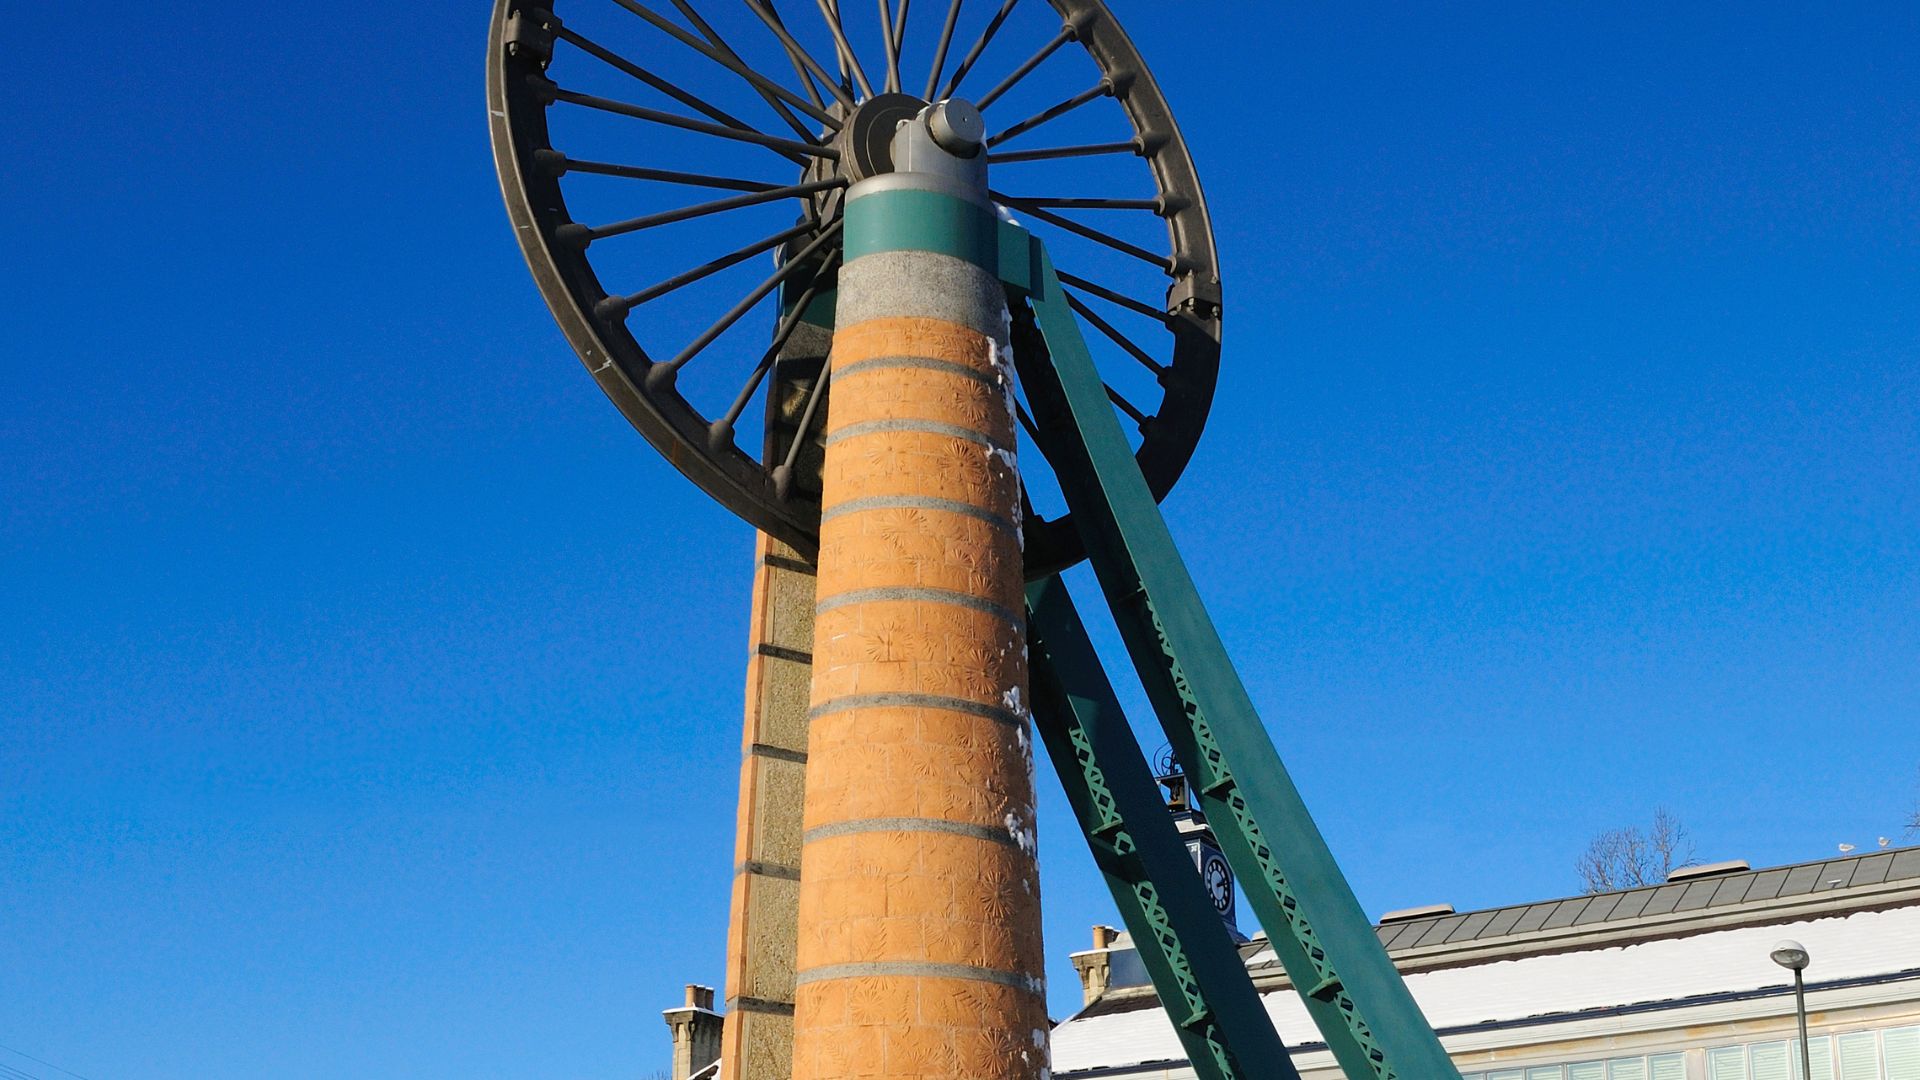 The Wheel in Radstock